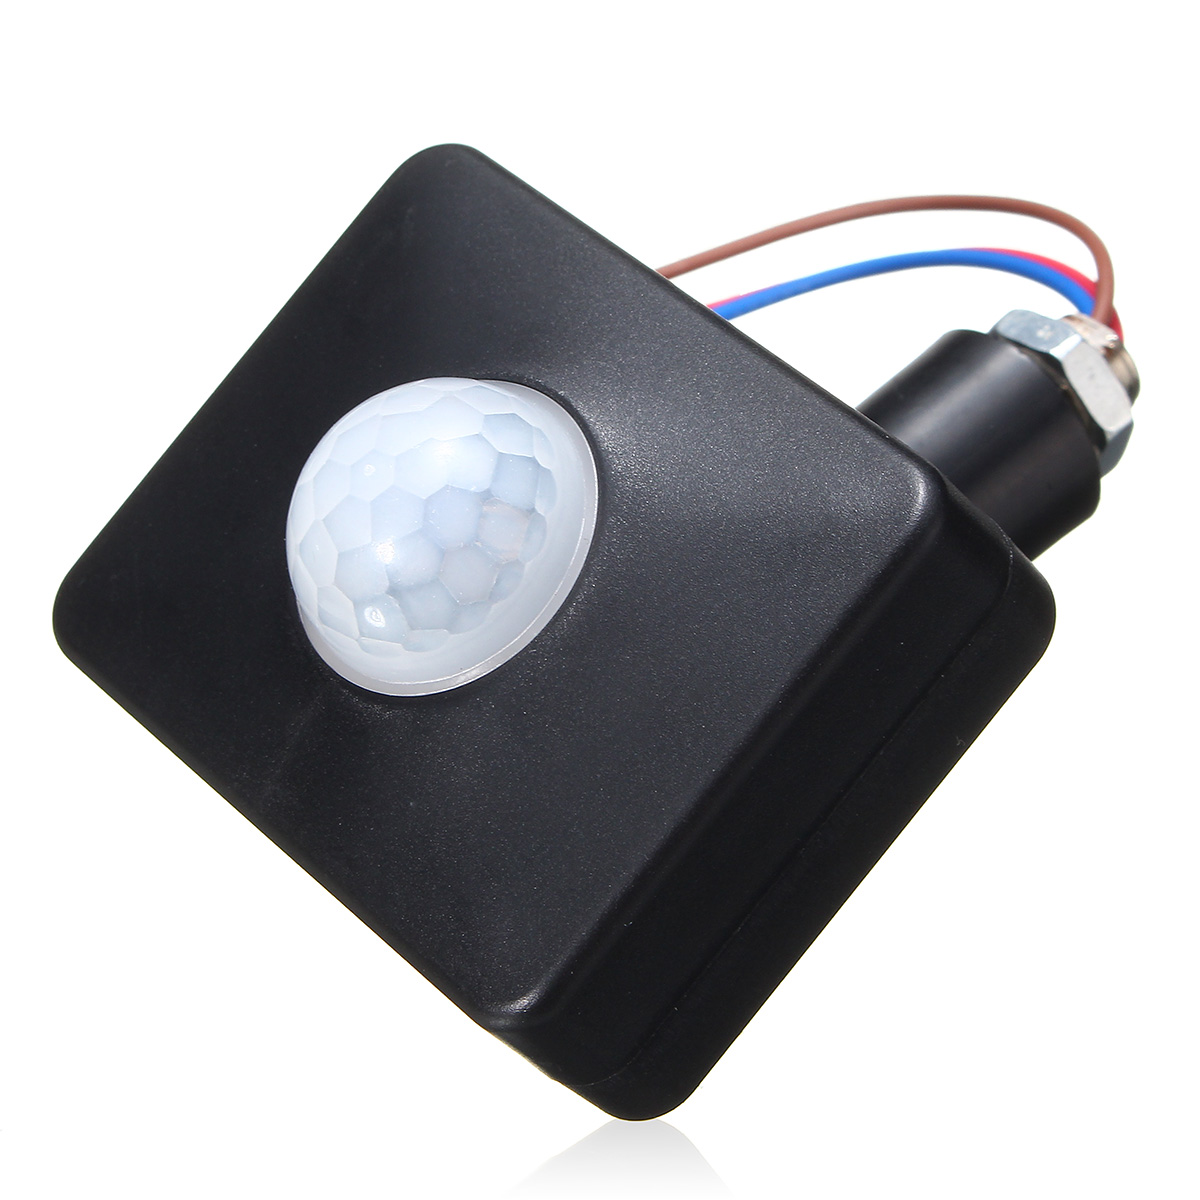 LED-120deg-100W-Infrared-PIR-Motion-Sensor-Detector-IndoorOutdoor-Wall-Light-Switch-220-240V-1132249